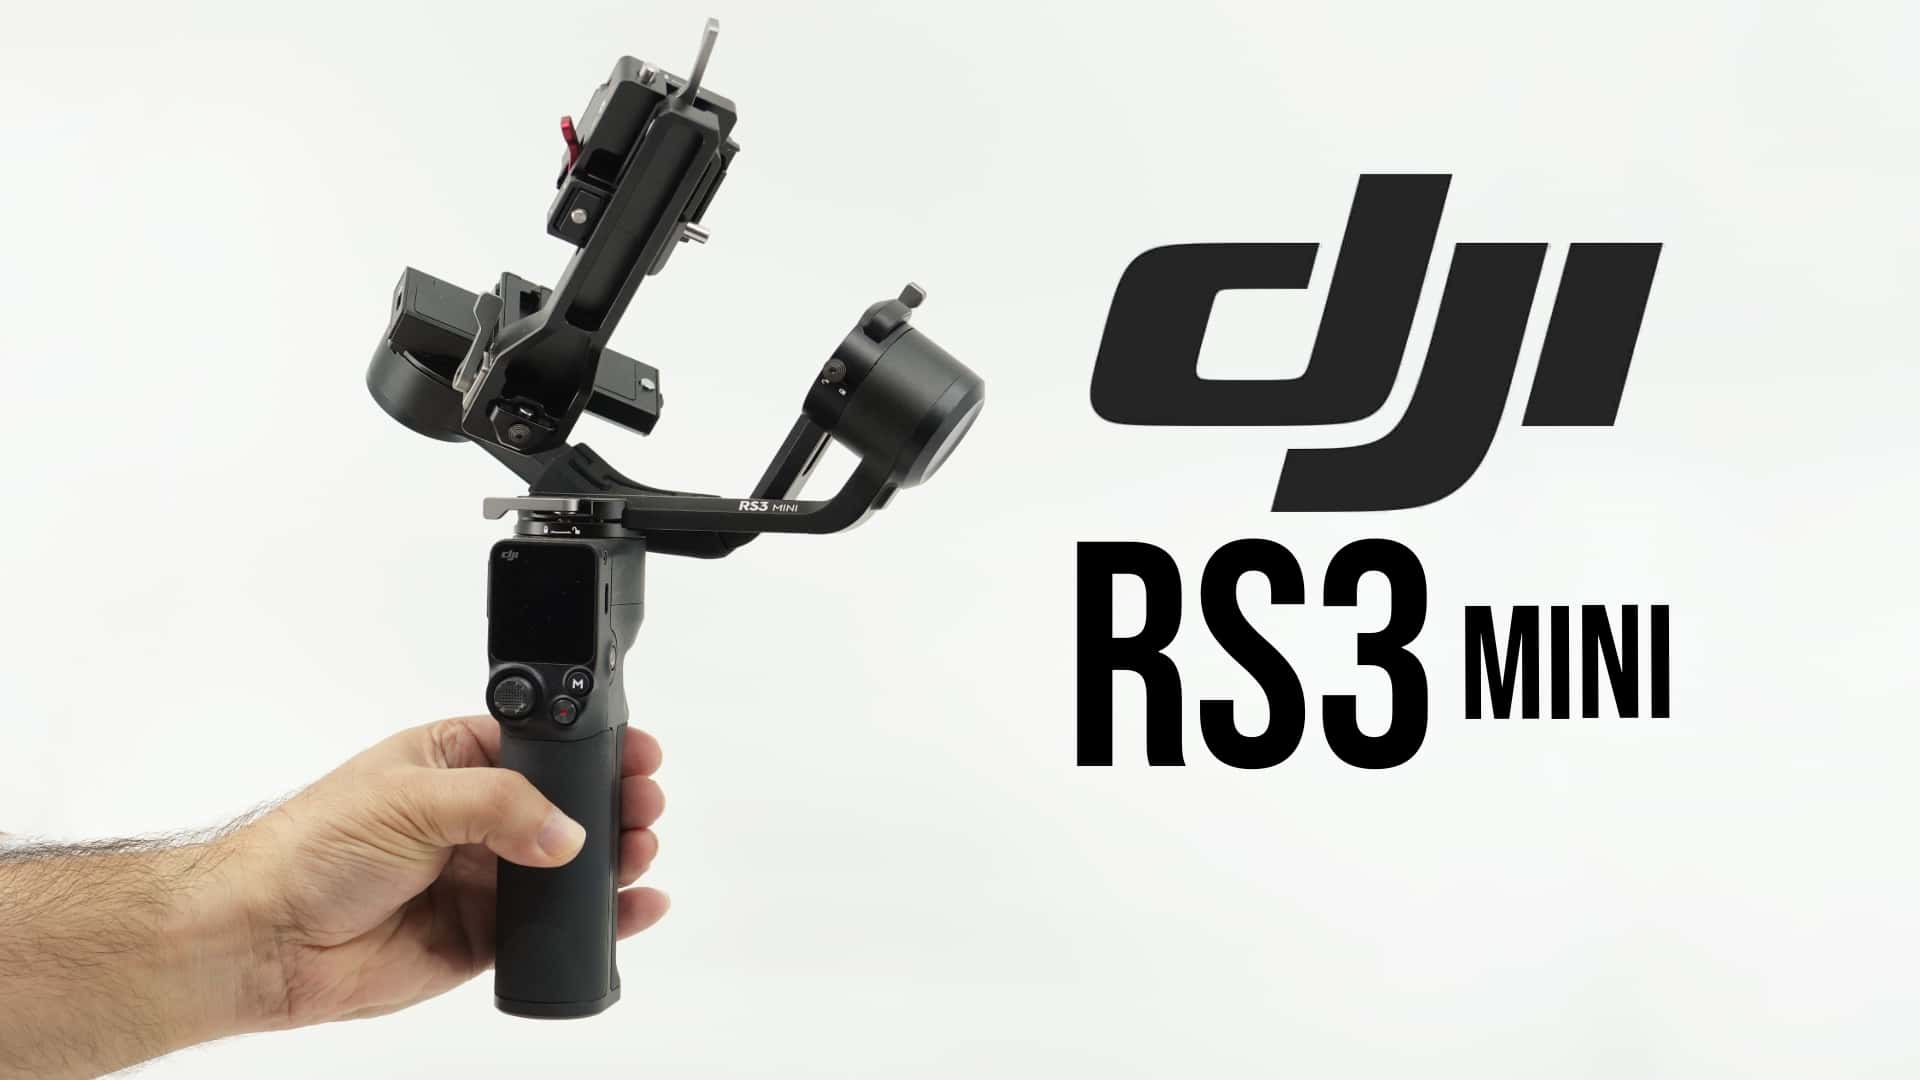 DJI announces the RS 3 Mini